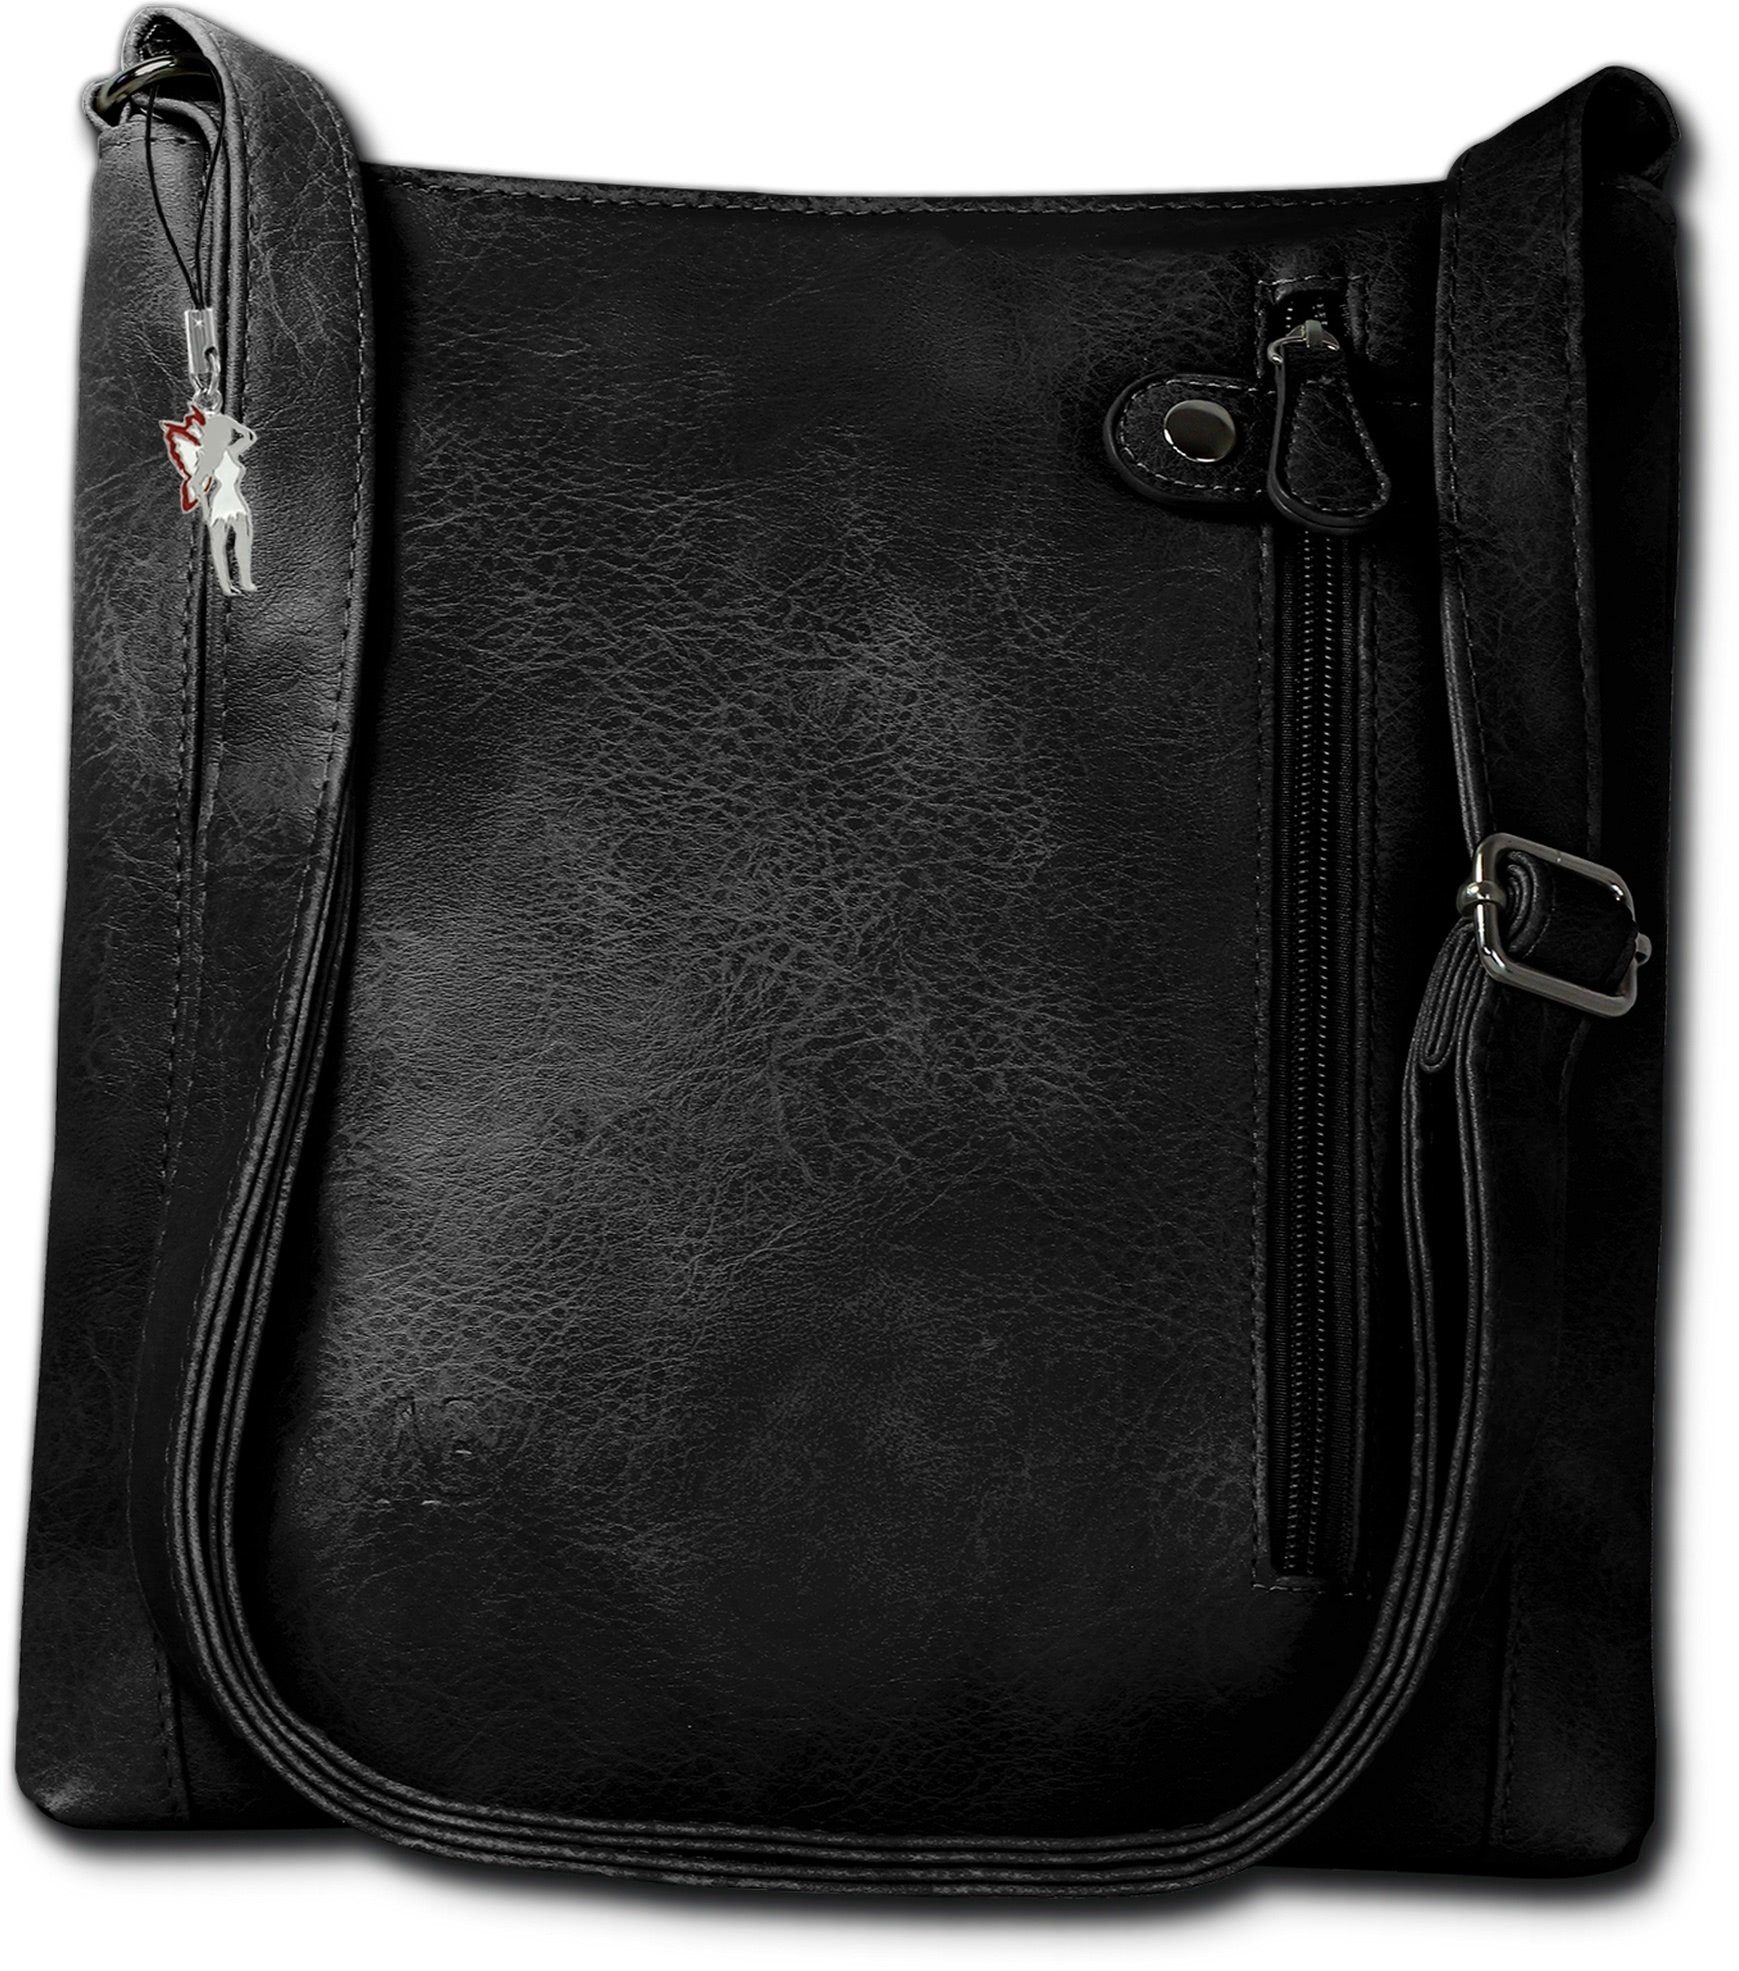 New Bags Handtasche »D2NewBags Umhängetasche Handtasche black« ( Umhängetasche), Damen Handtasche, Umhängetasche schwarz, Größe ca. 27,5cm,  halbrund online kaufen | OTTO